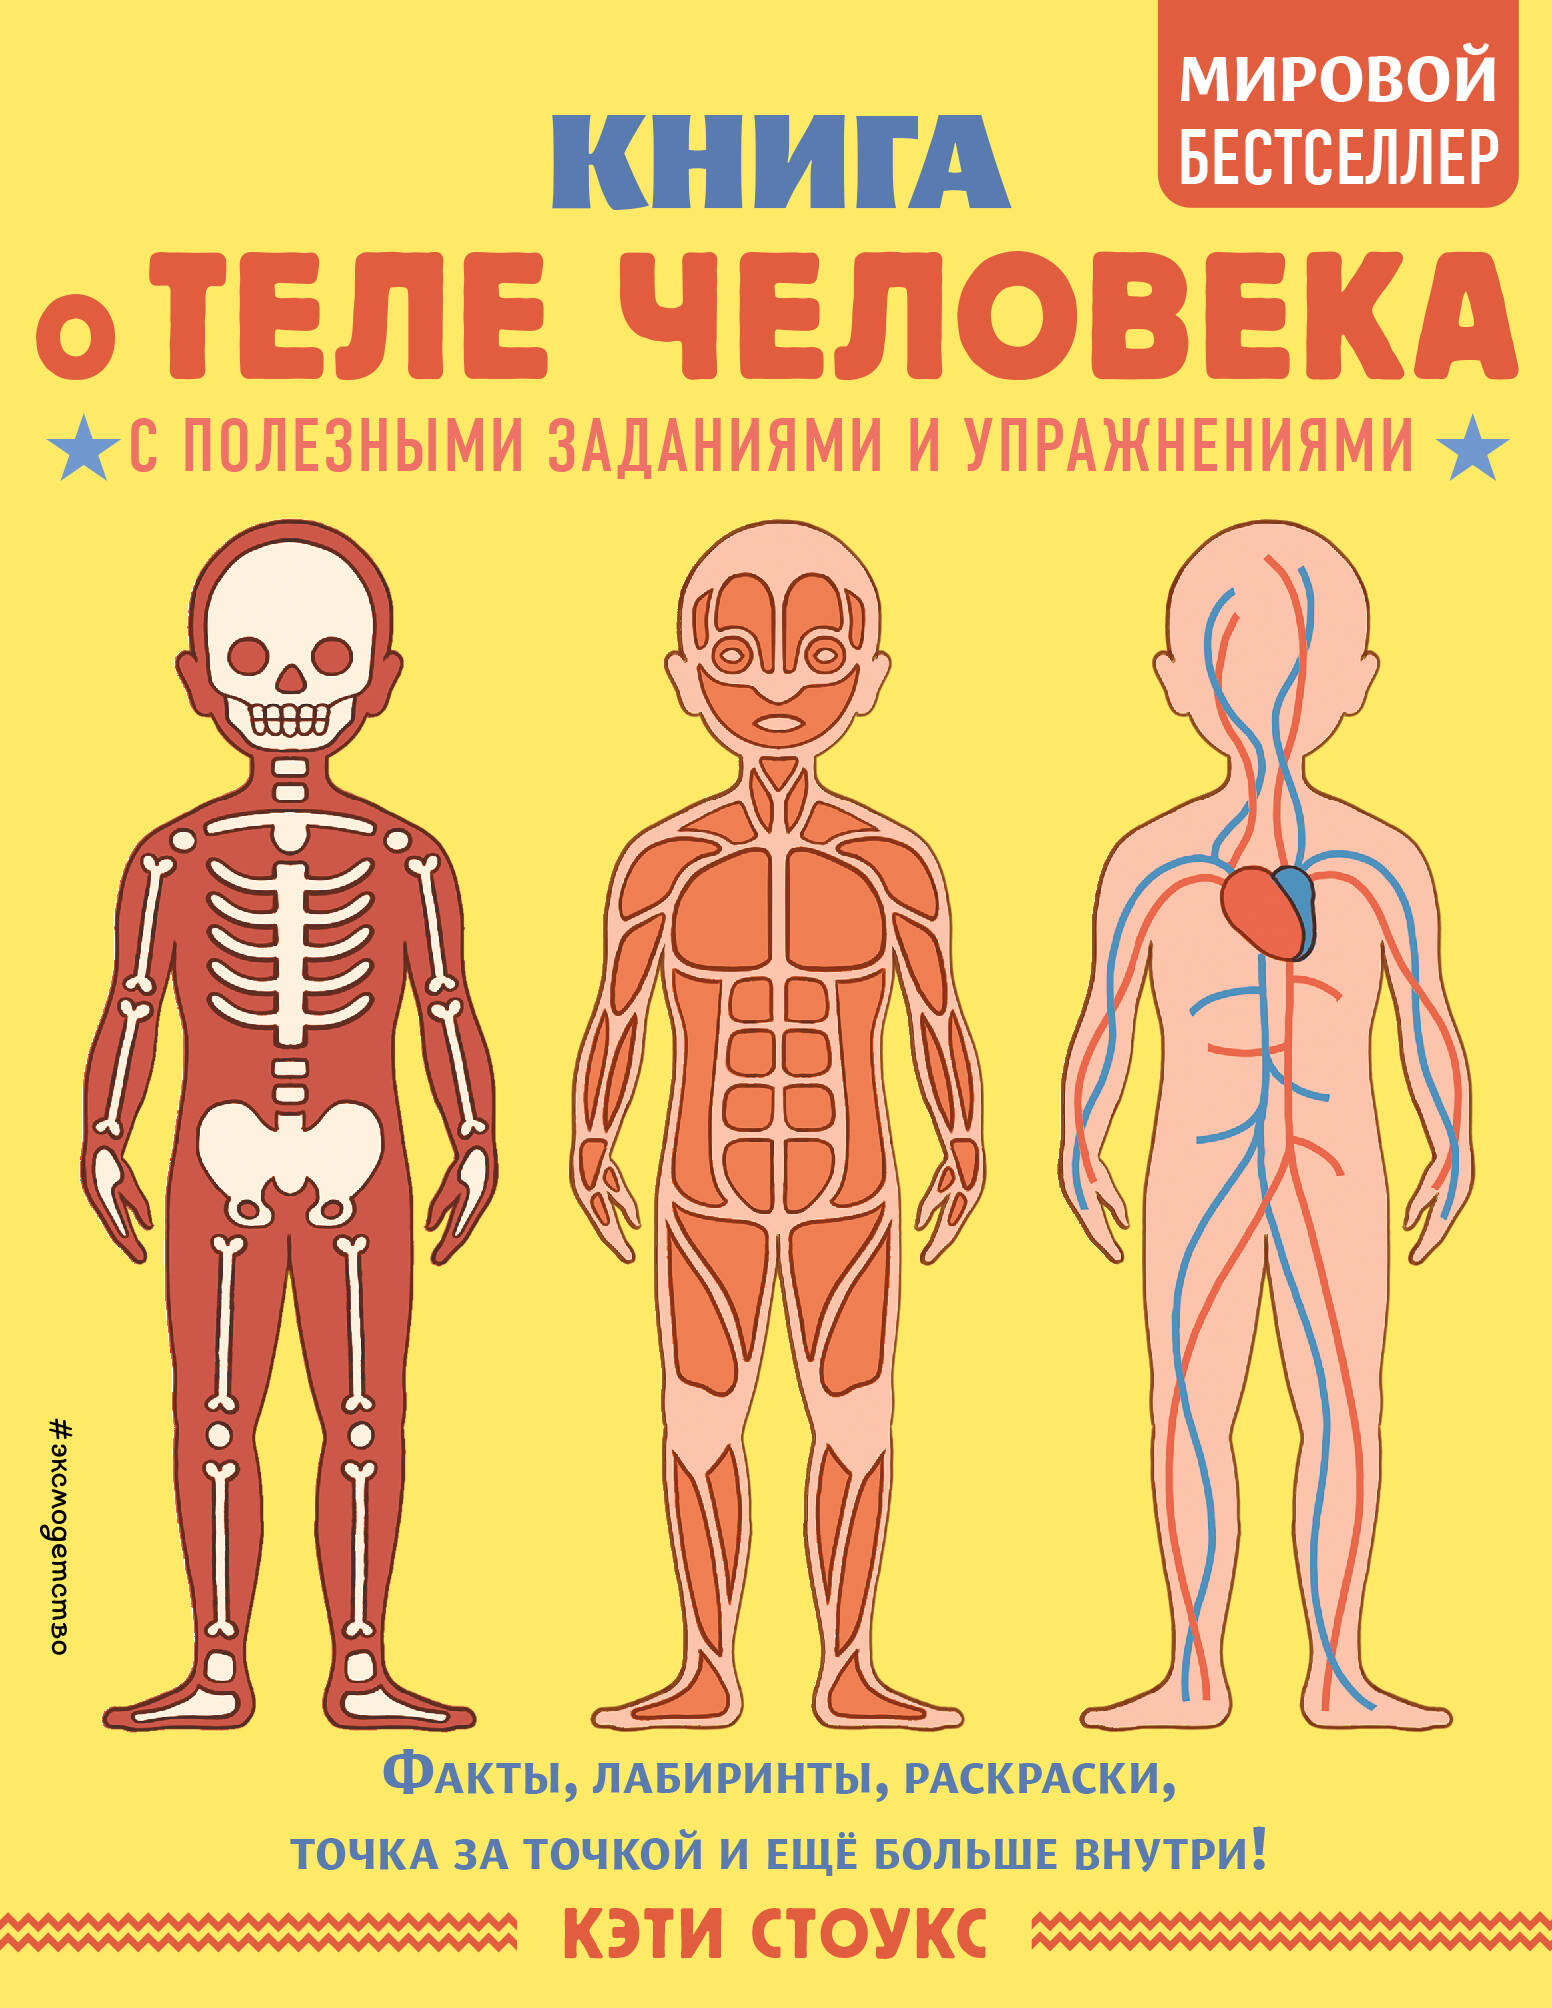 Травина Ирина Владимировна - Книга о теле человека с полезными заданиями и упражнениями